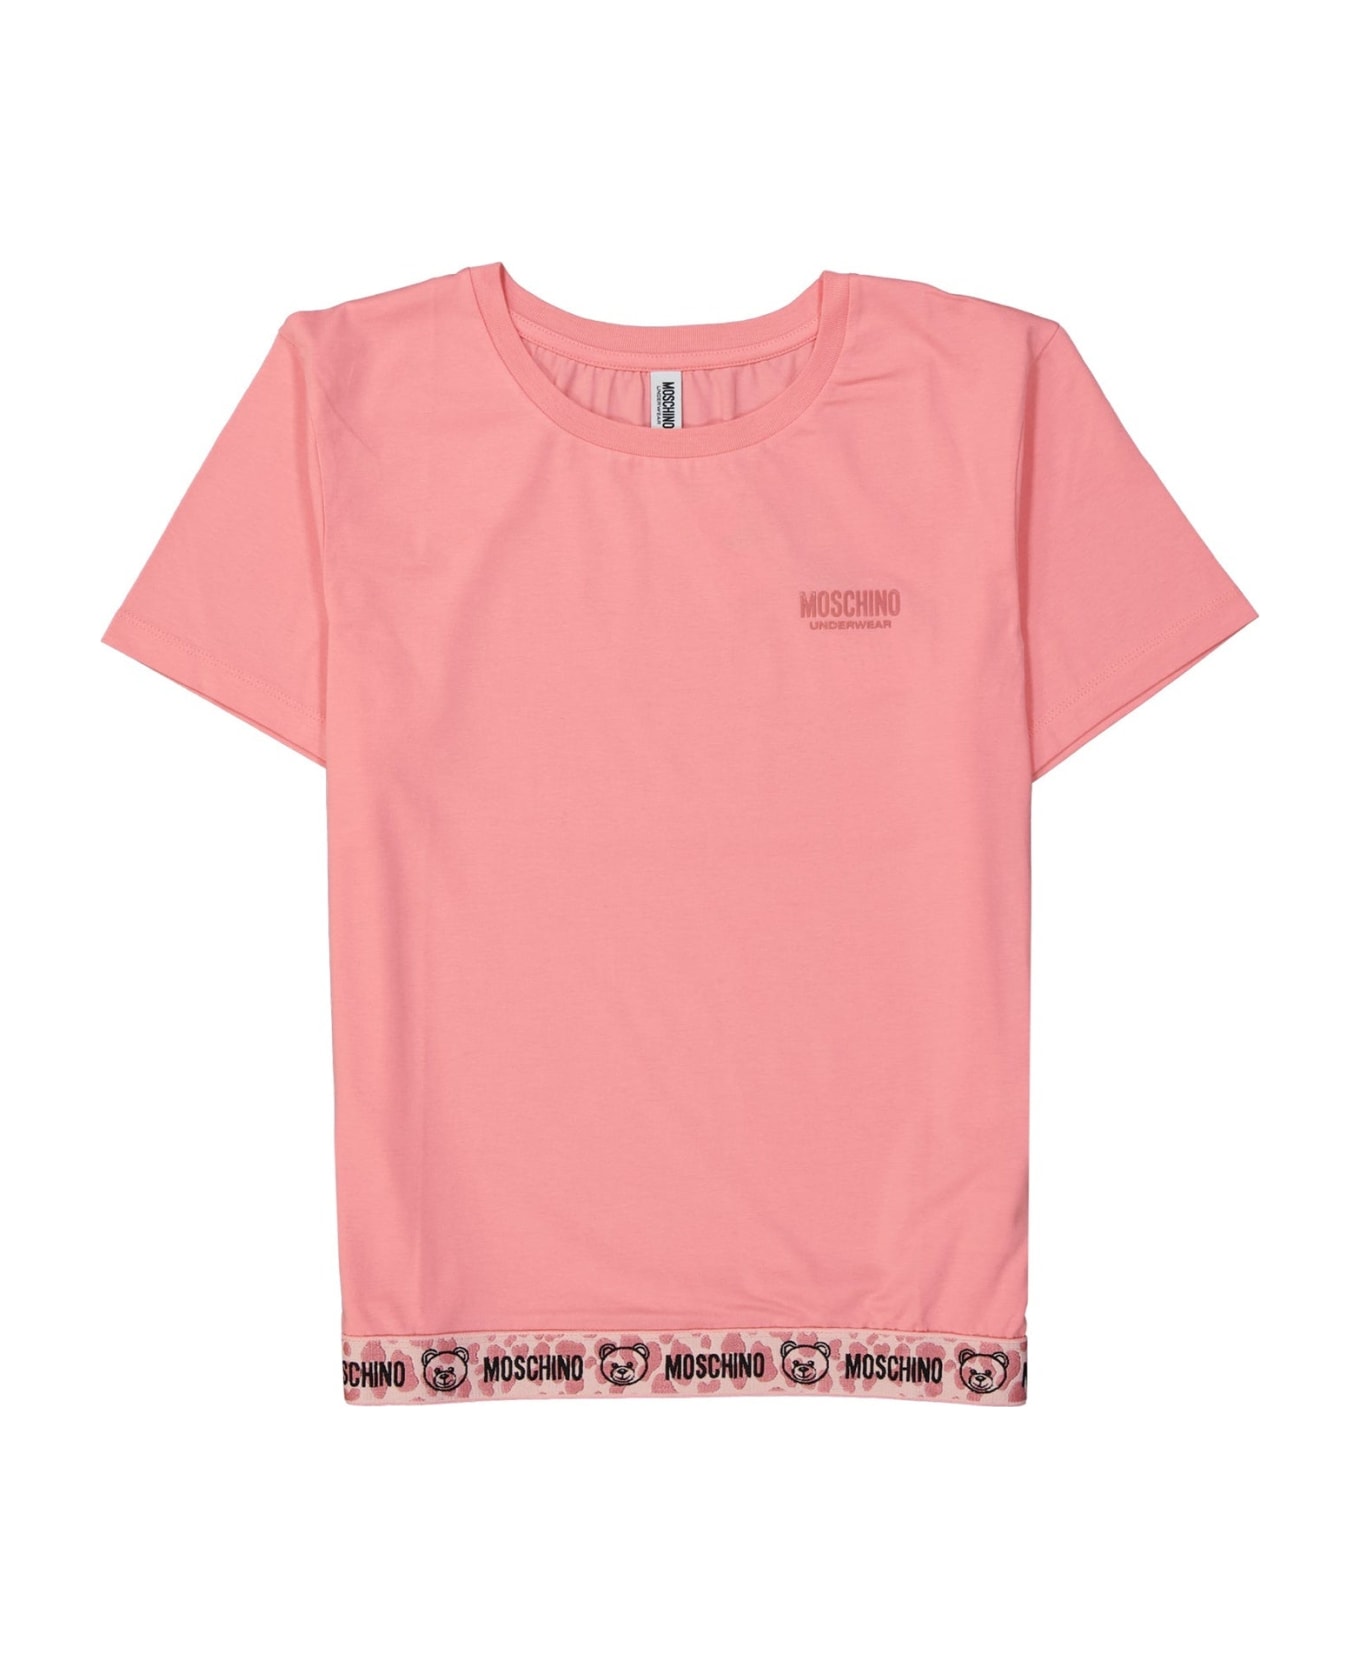 Moschino Underwear Cotton T-shirt - Pink